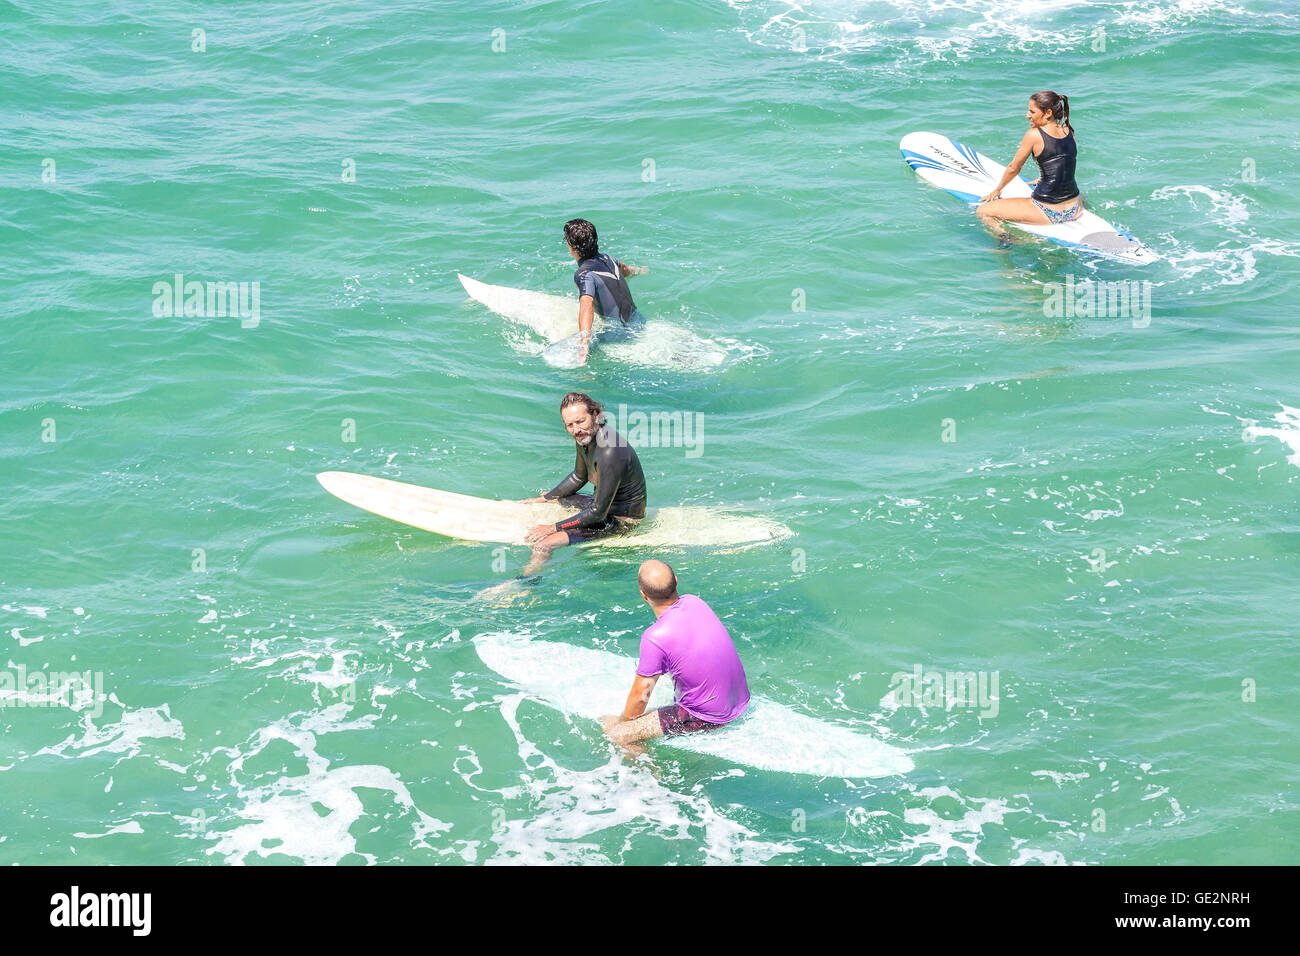 Venice, Kalifornien, USA - 22. August 2015: Surfer Wellen an einem schönen sonnigen Tag warten. Stockfoto